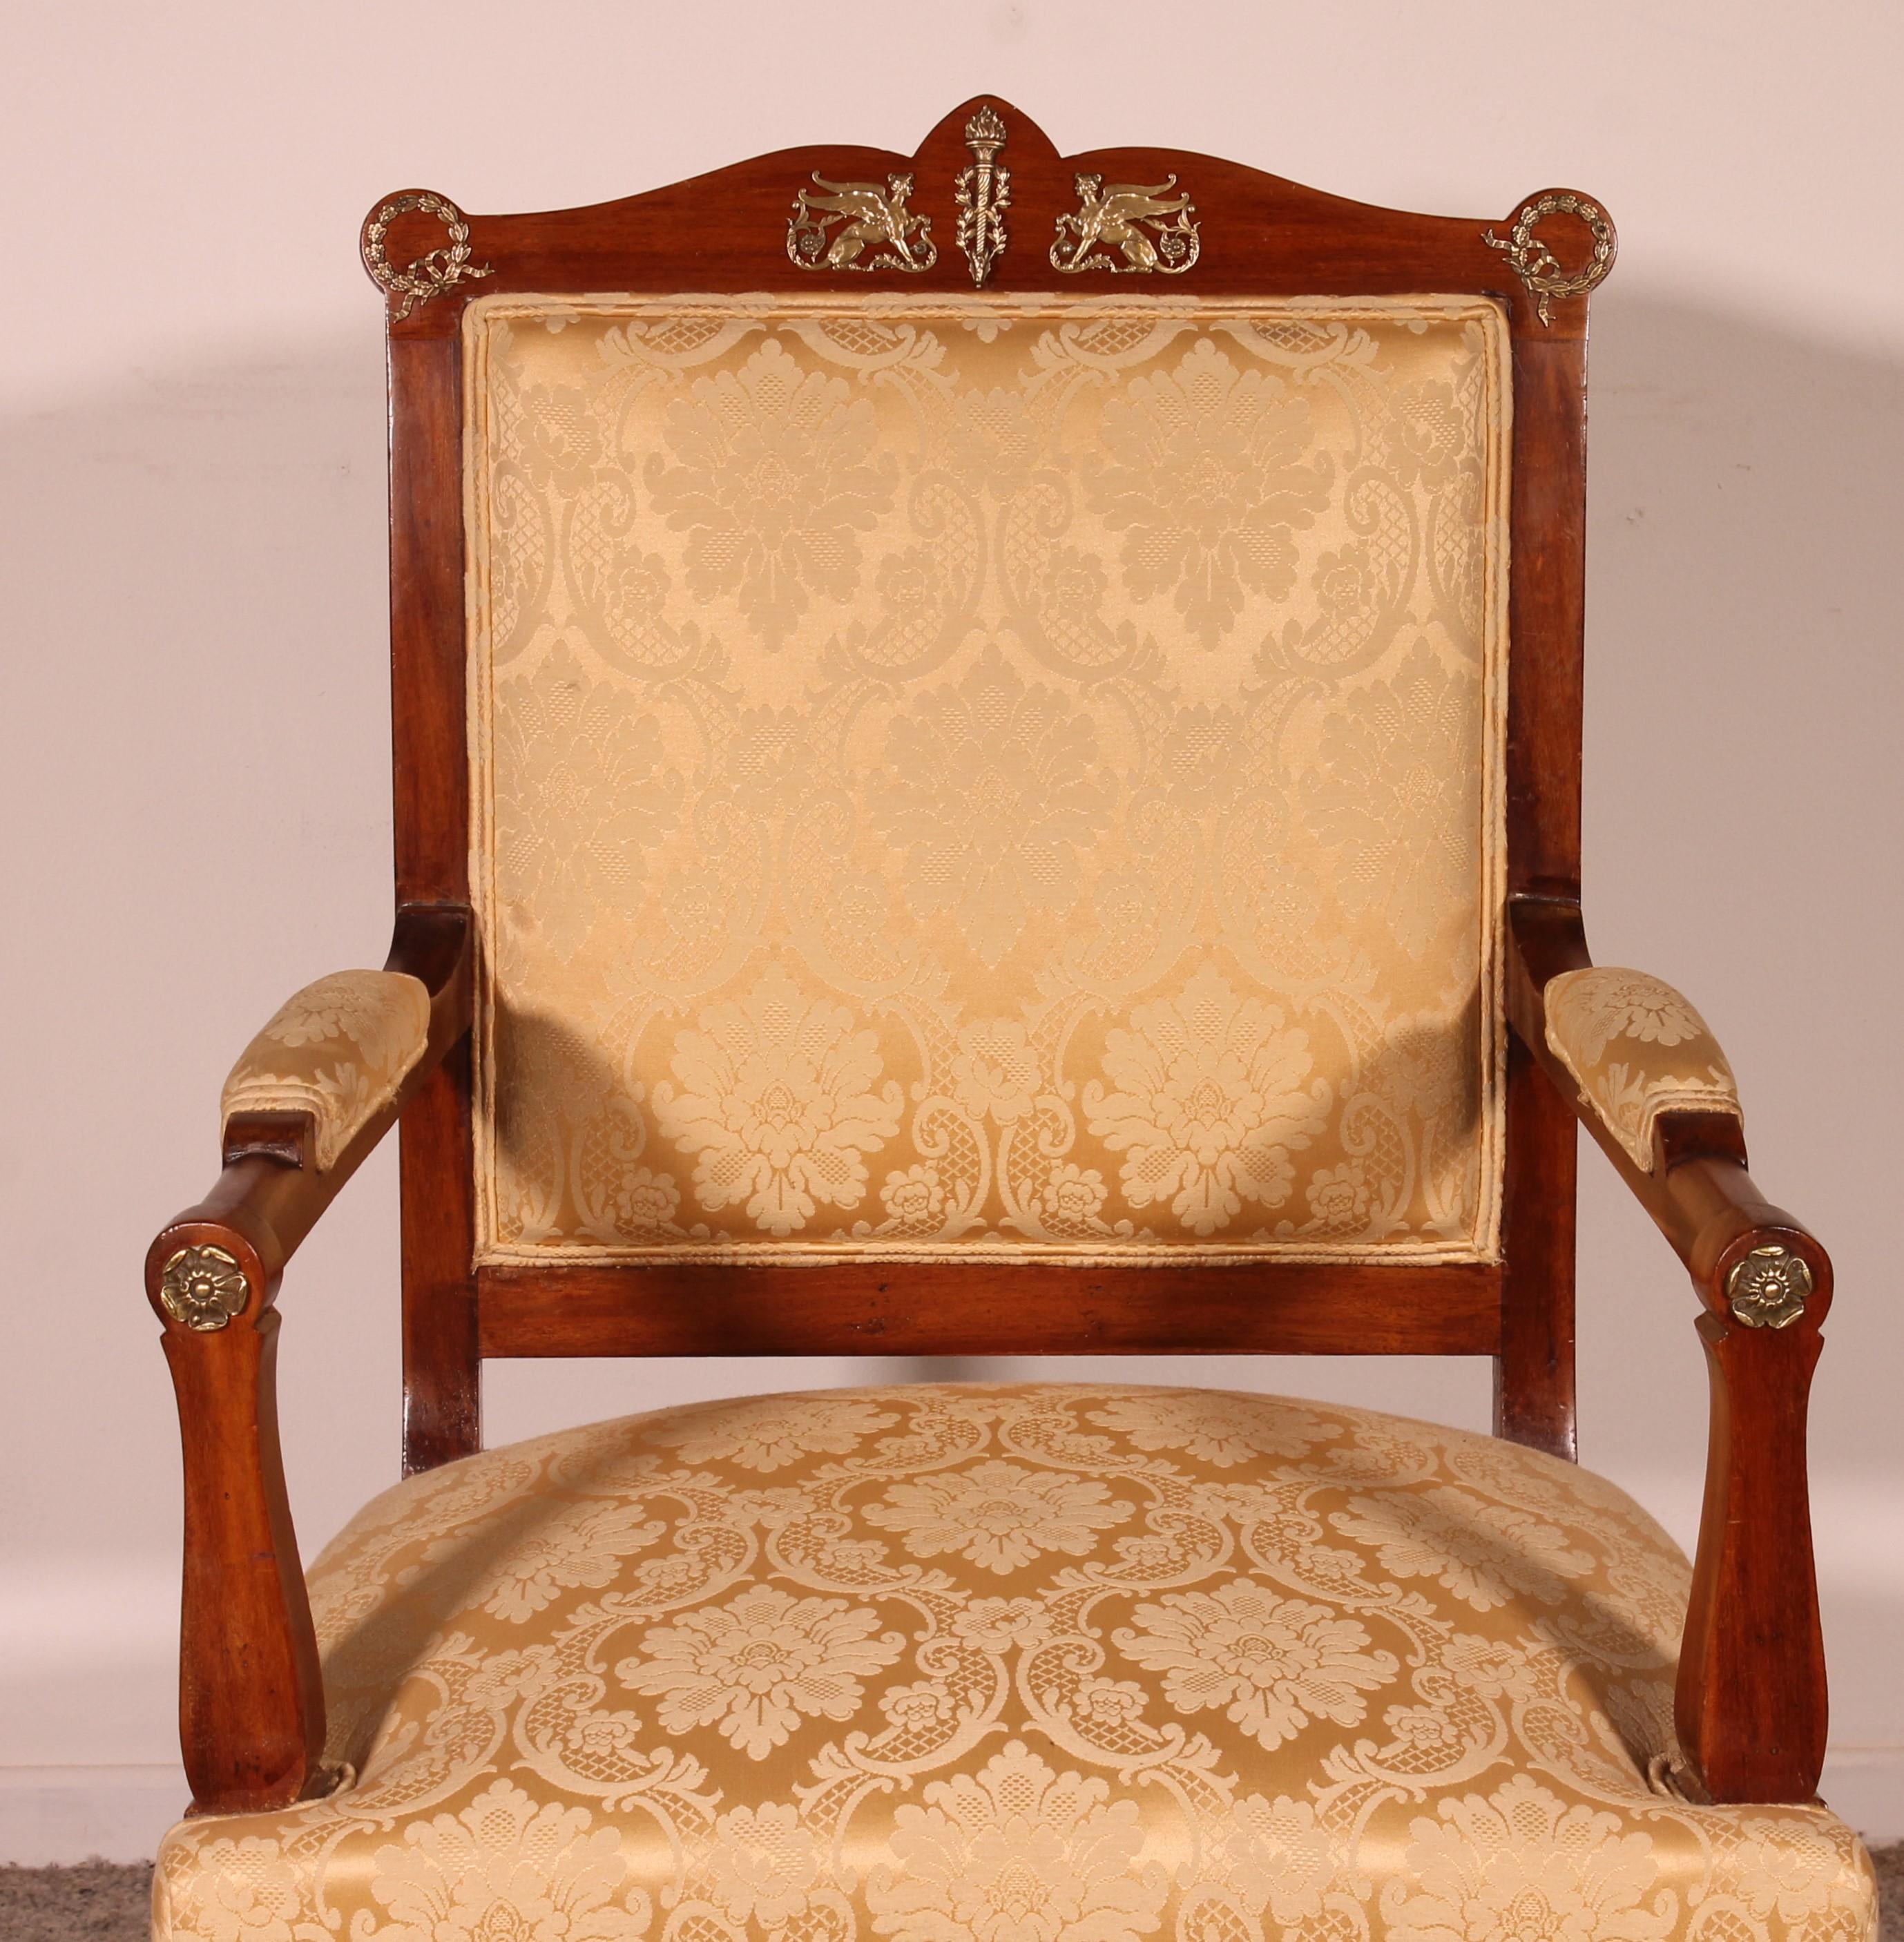 Schöner Mahagoni-Sessel im Empire-Stil vom Ende des 19. Jahrhunderts
Sehr gute Qualität Bronze und schönes Mahagoni
Sehr schöner Sessel, der als Bibliothekssessel oder Bürosessel verwendet werden kann
Sitzhöhe 44cm
In hervorragendem Zustand.